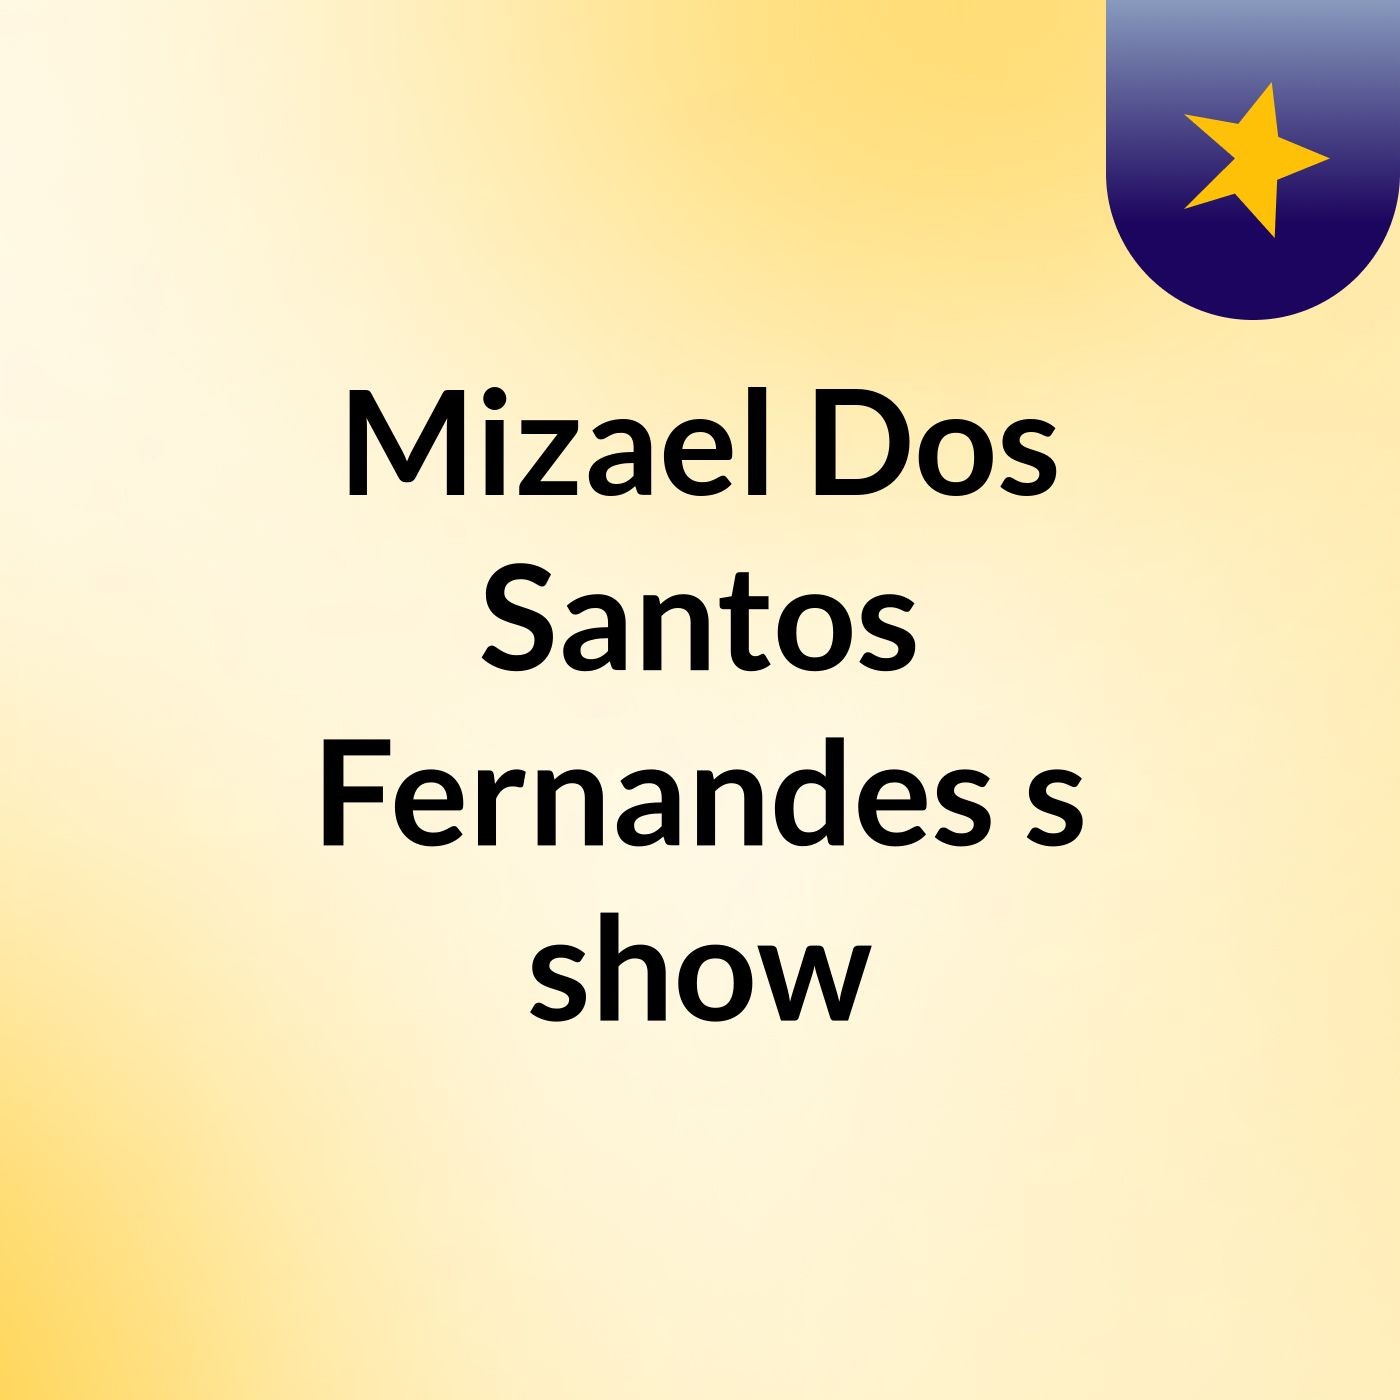 Mizael Dos Santos Fernandes's show